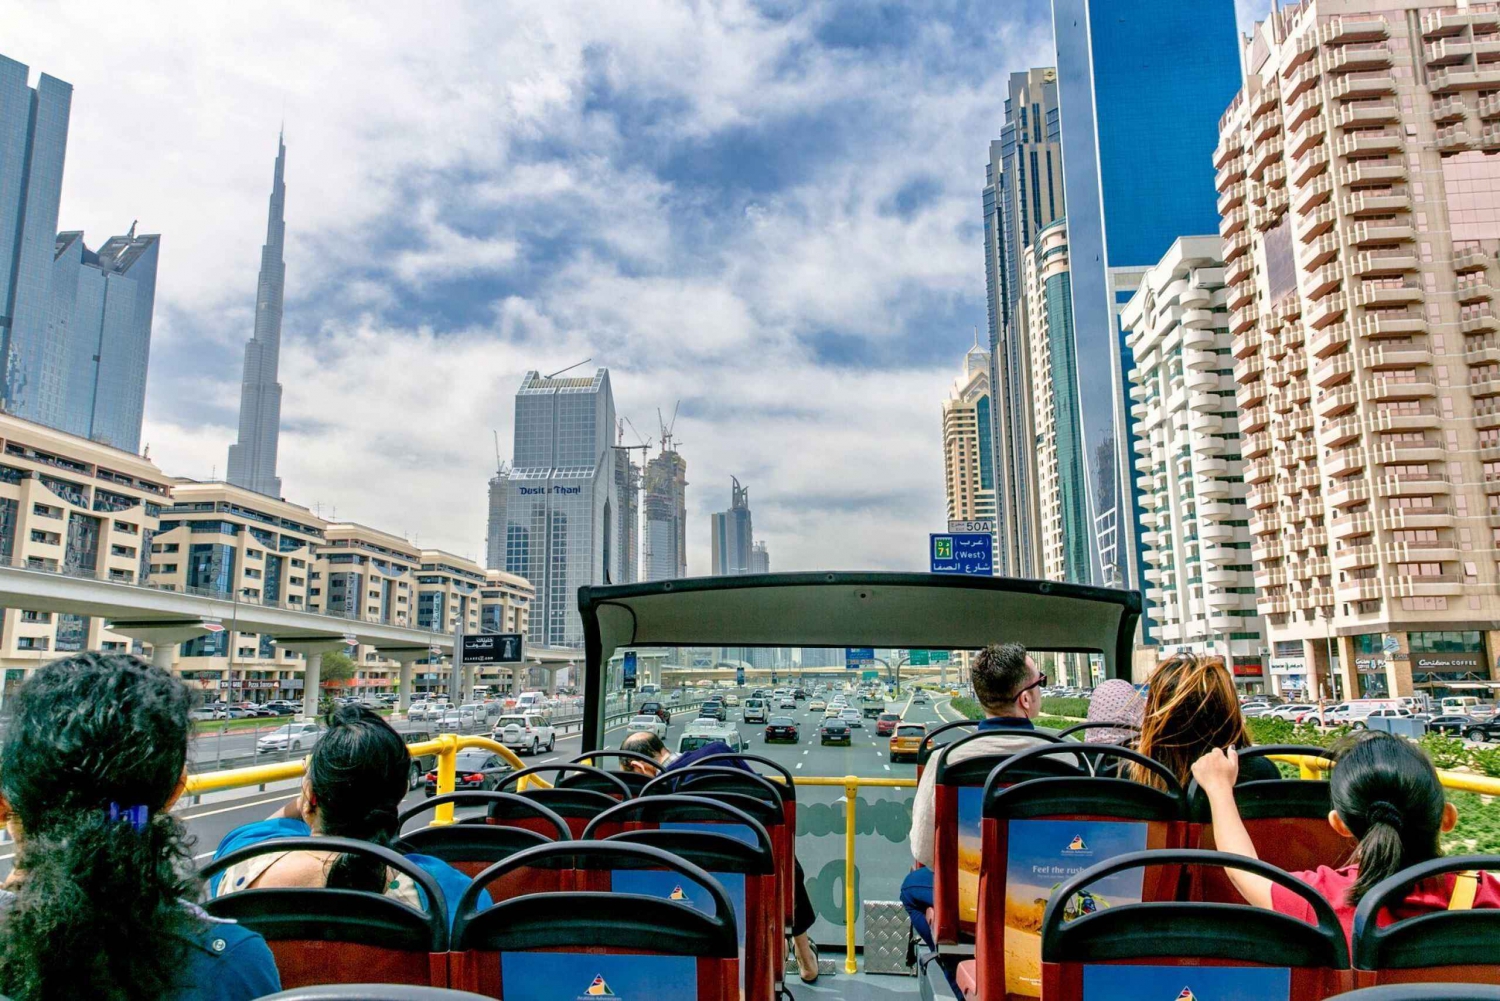 Dubai: Hop-On Hop-Off Bus Tour 24, 48 or 72 Hours